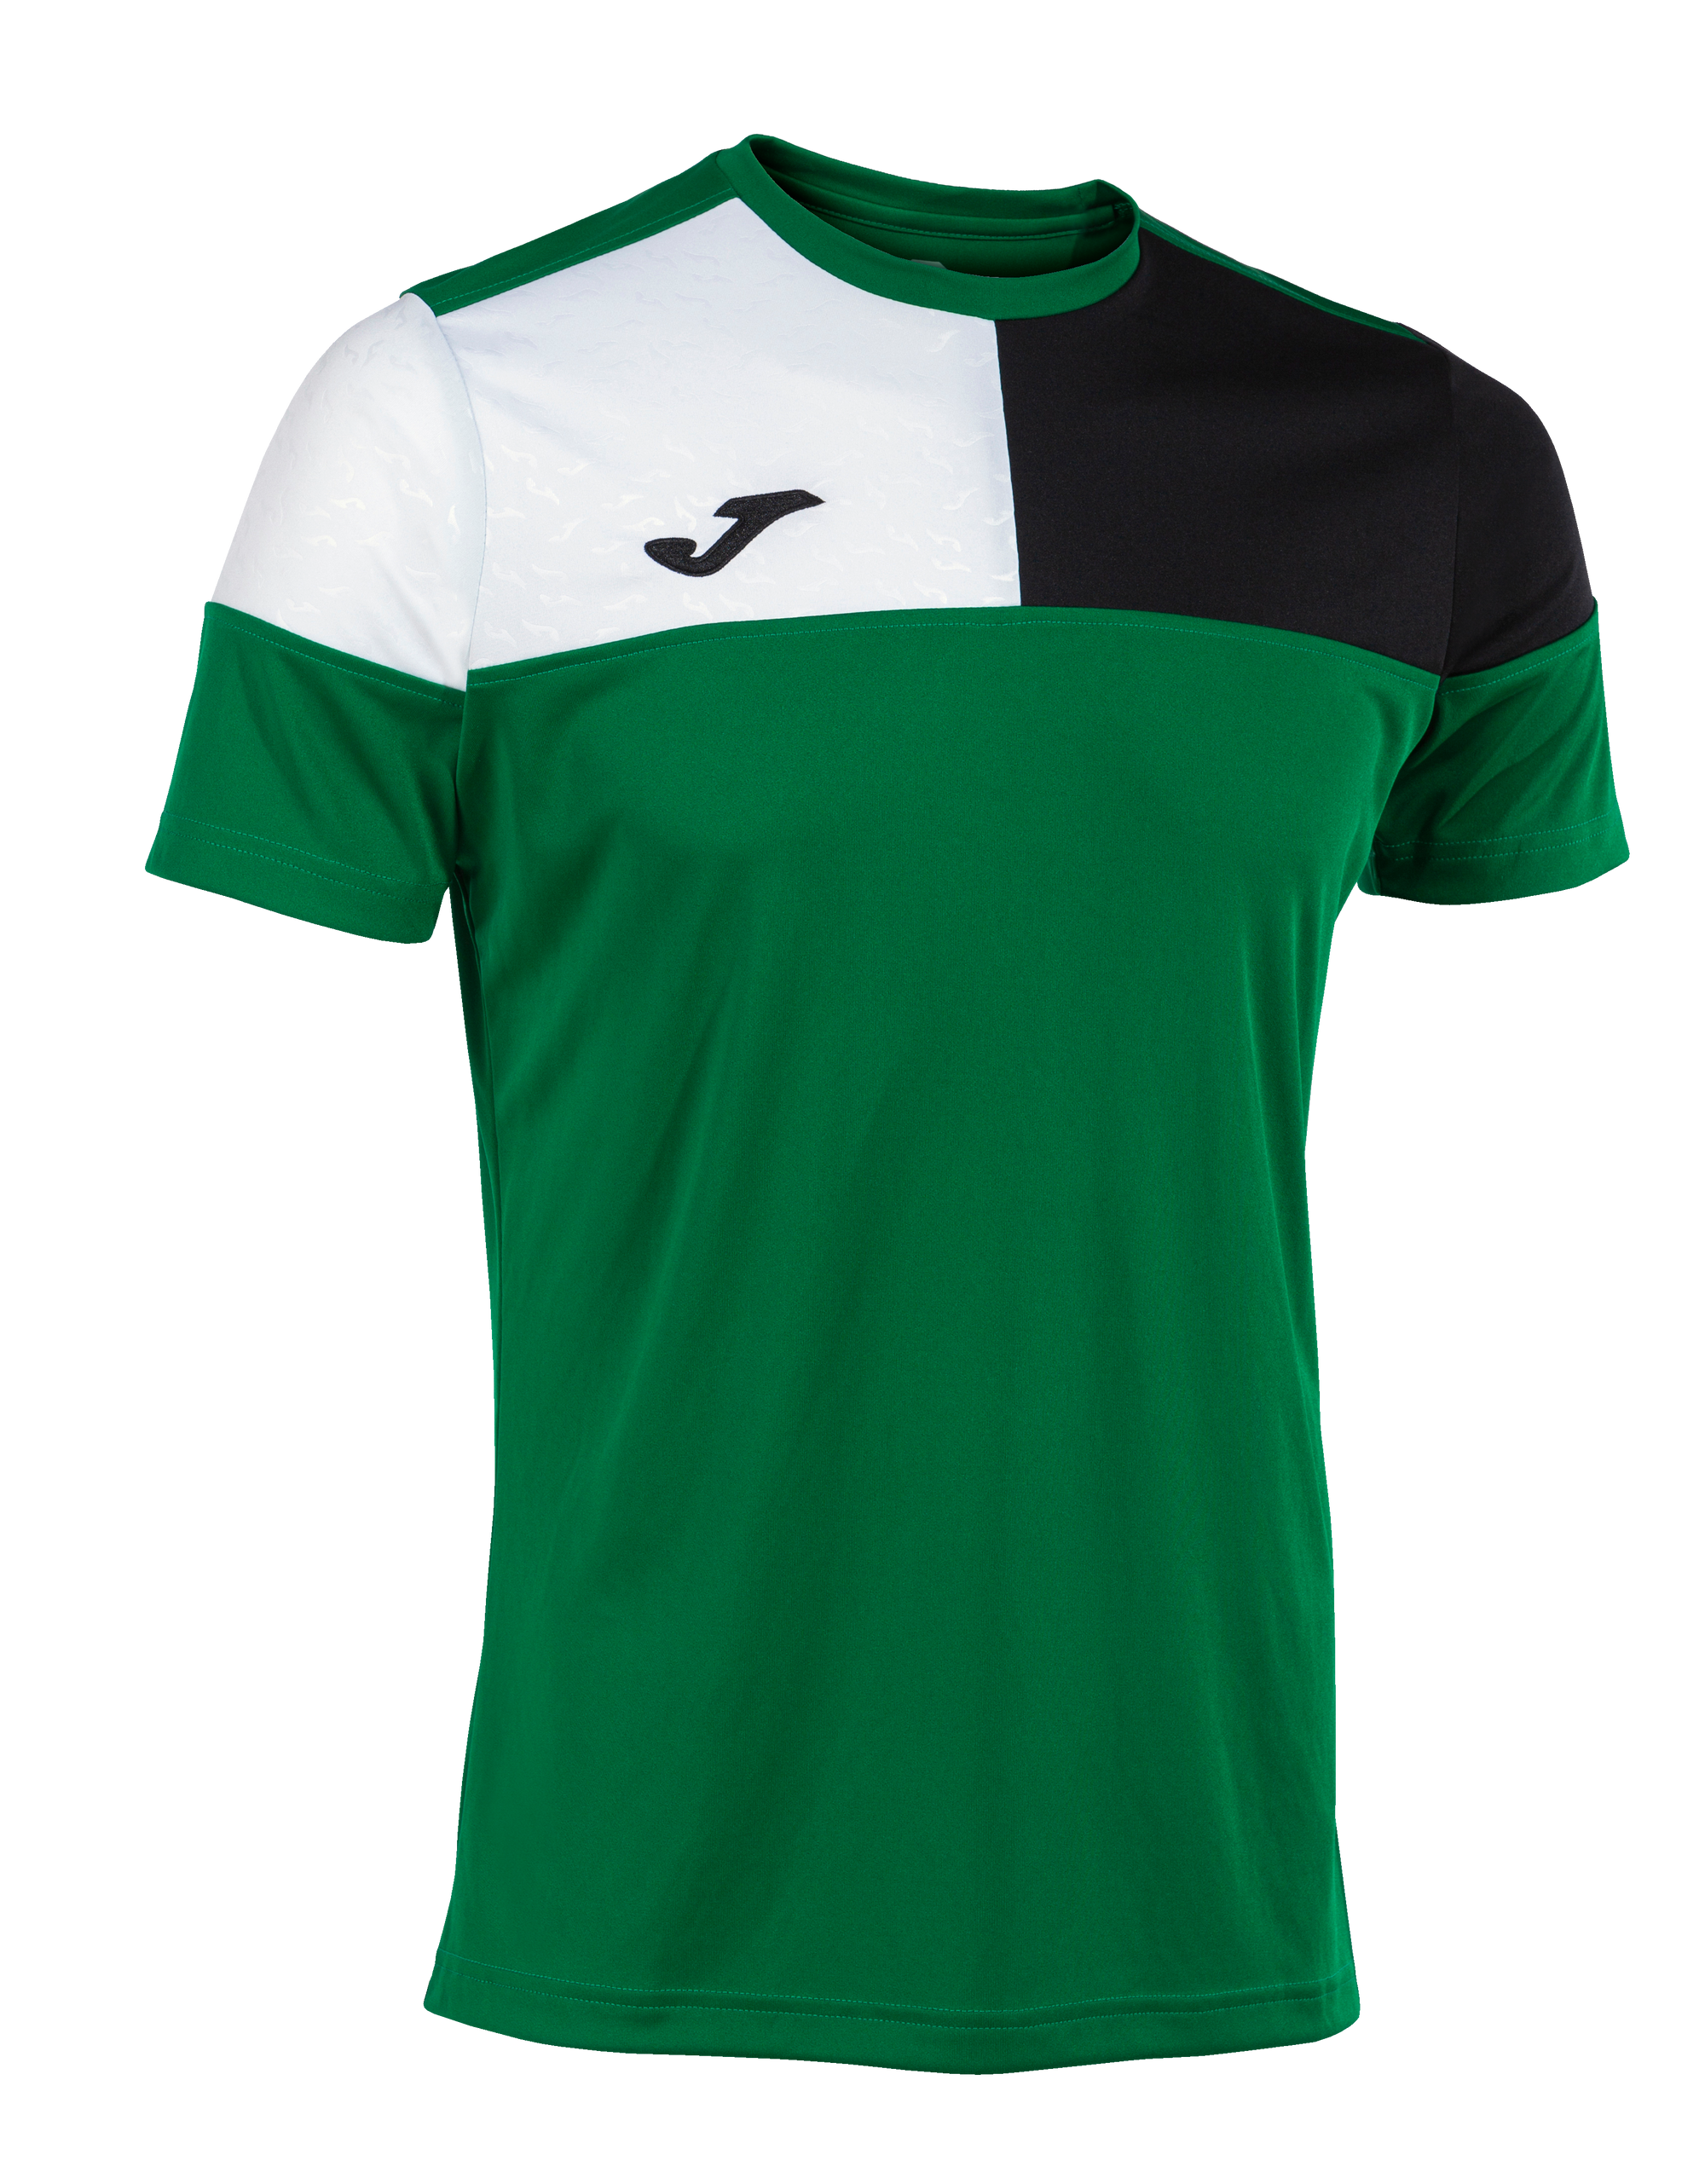 Joma Crew V Short Sleeve T-Shirt - Green Medium/Black